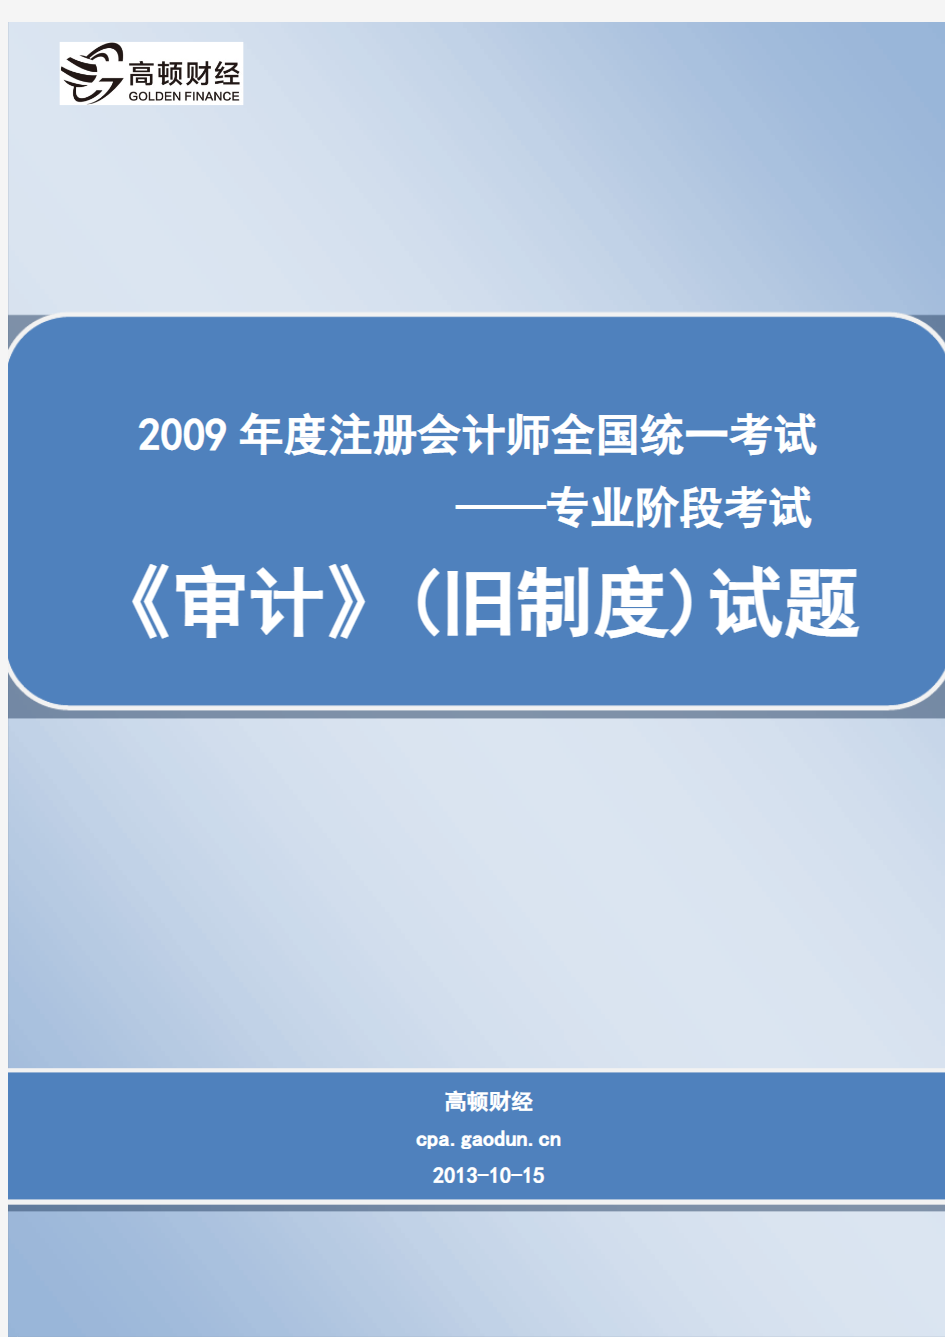 2009年度注册会计师全国统一考试_专业阶段考试_《审计》(旧制度)试题